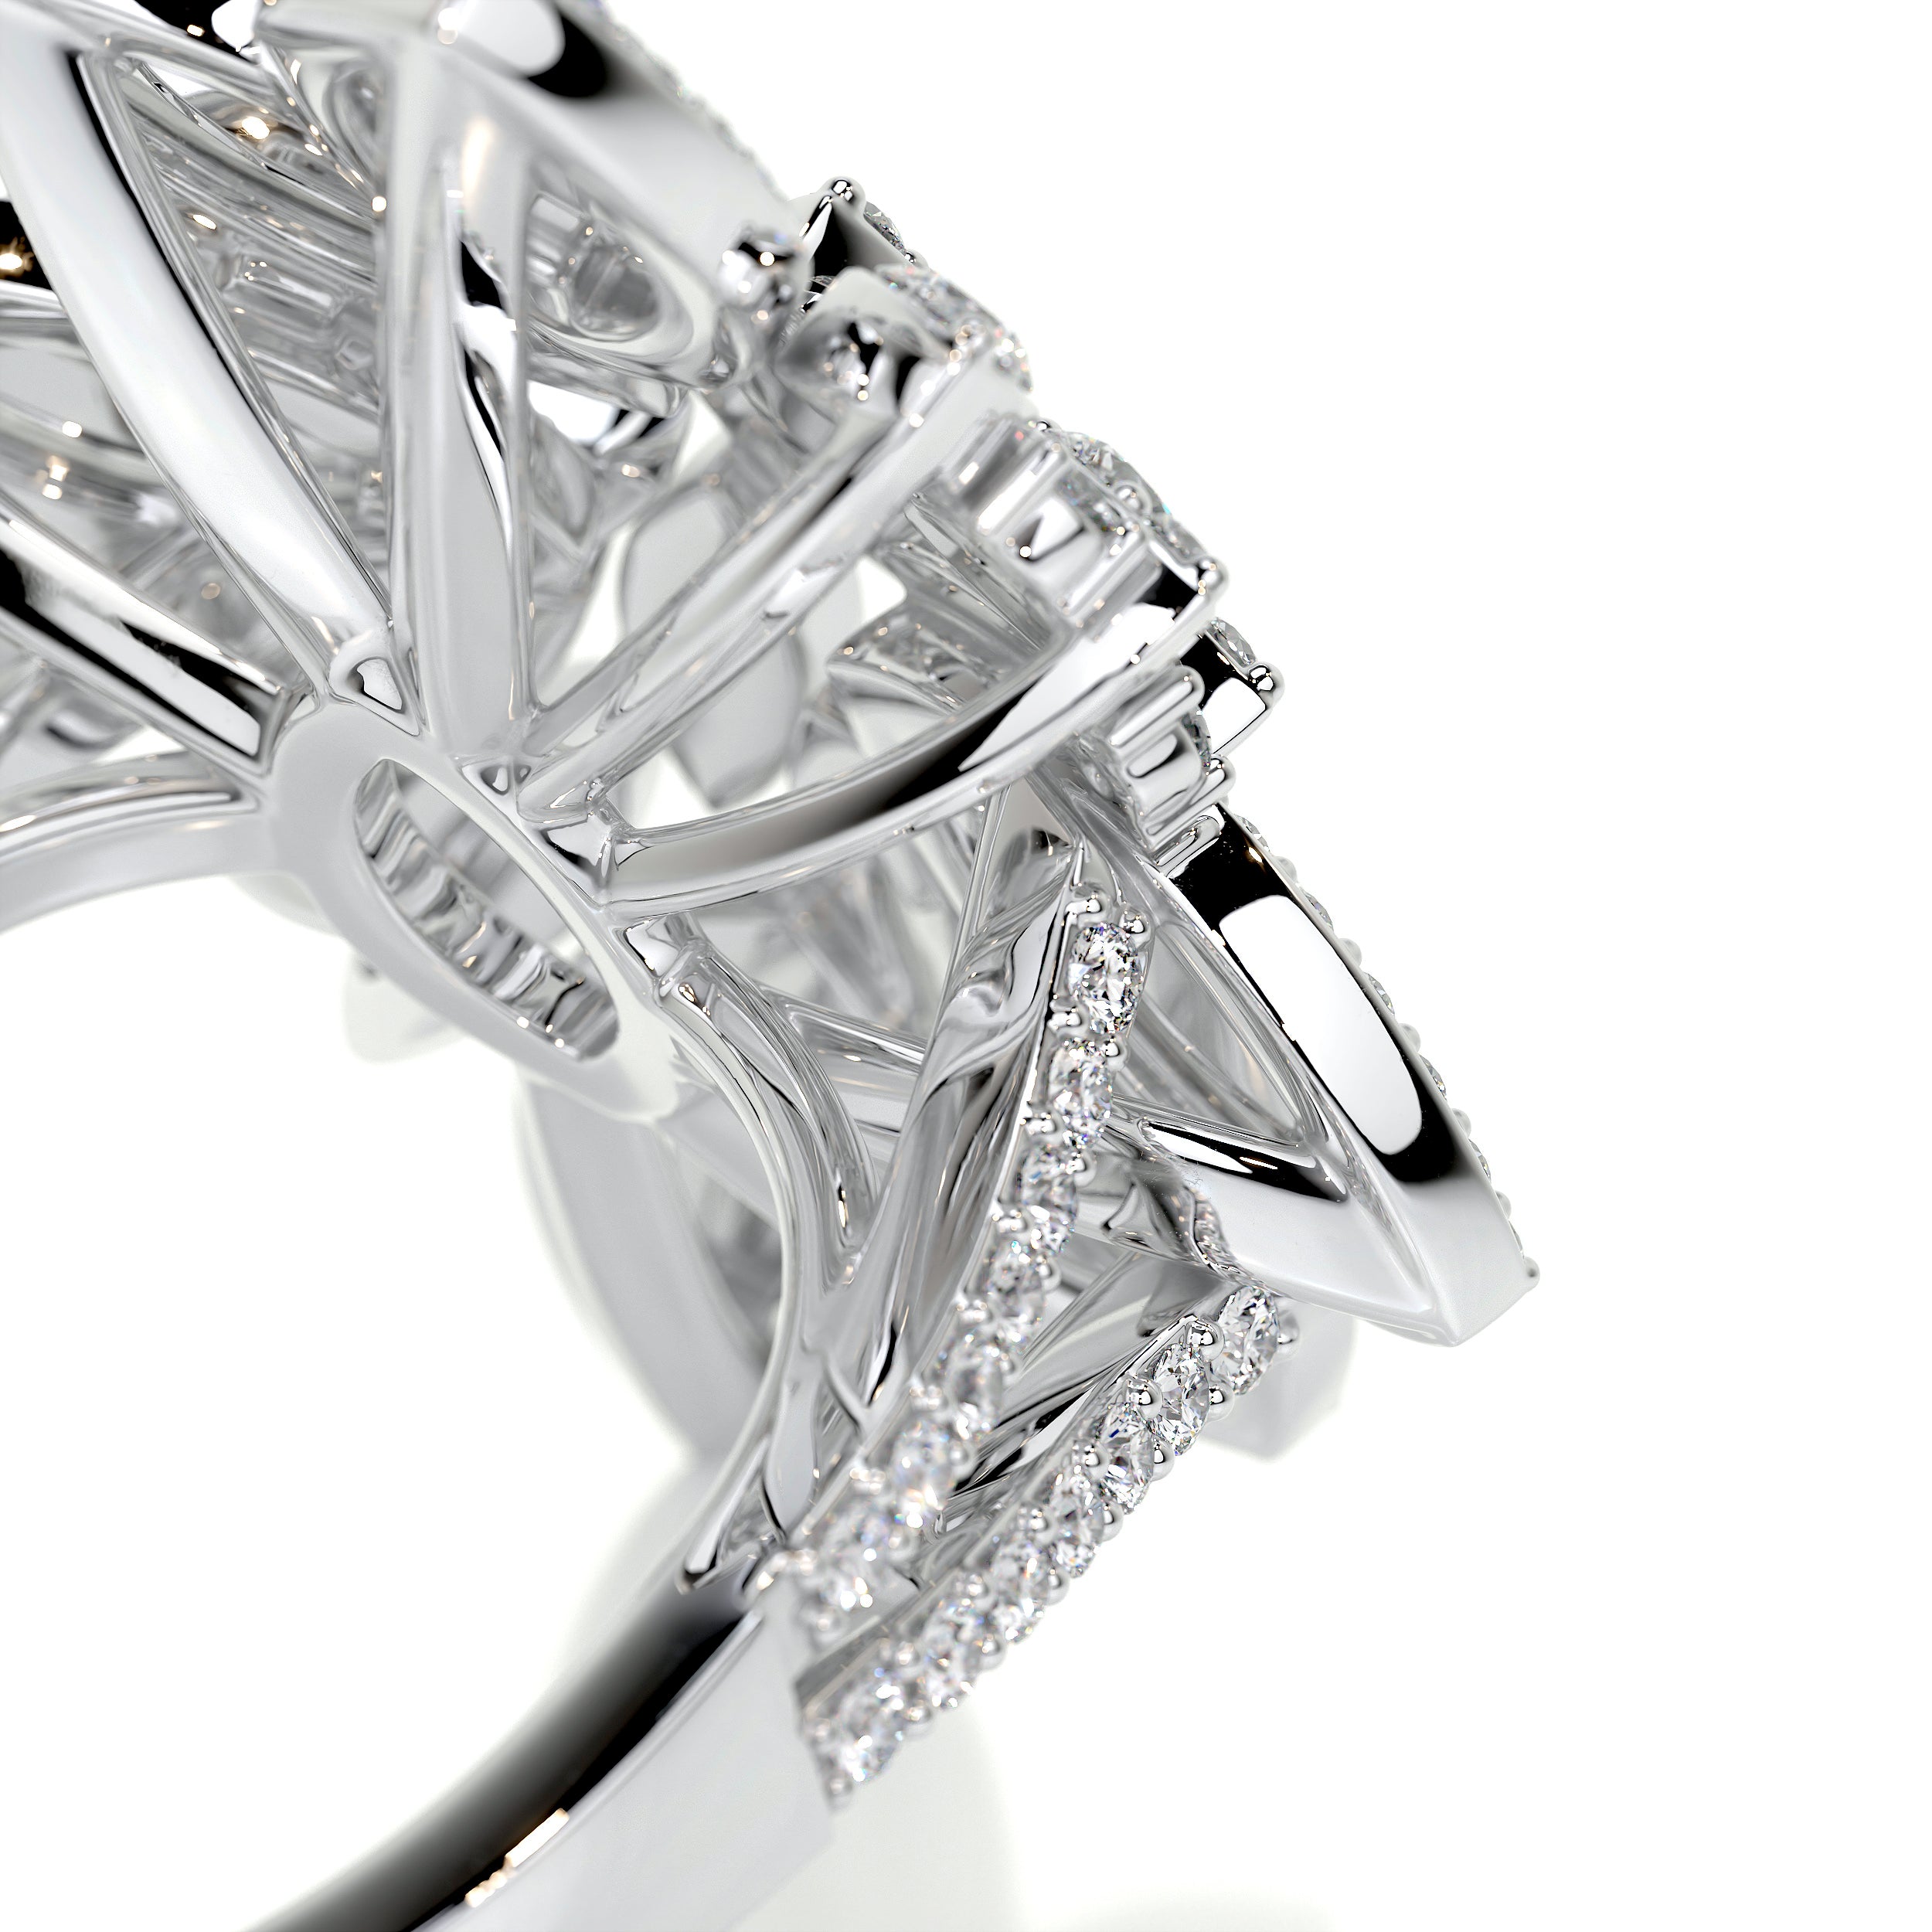 Ivory Fashion Diamond Ring   (1.5 Carat) -18K White Gold